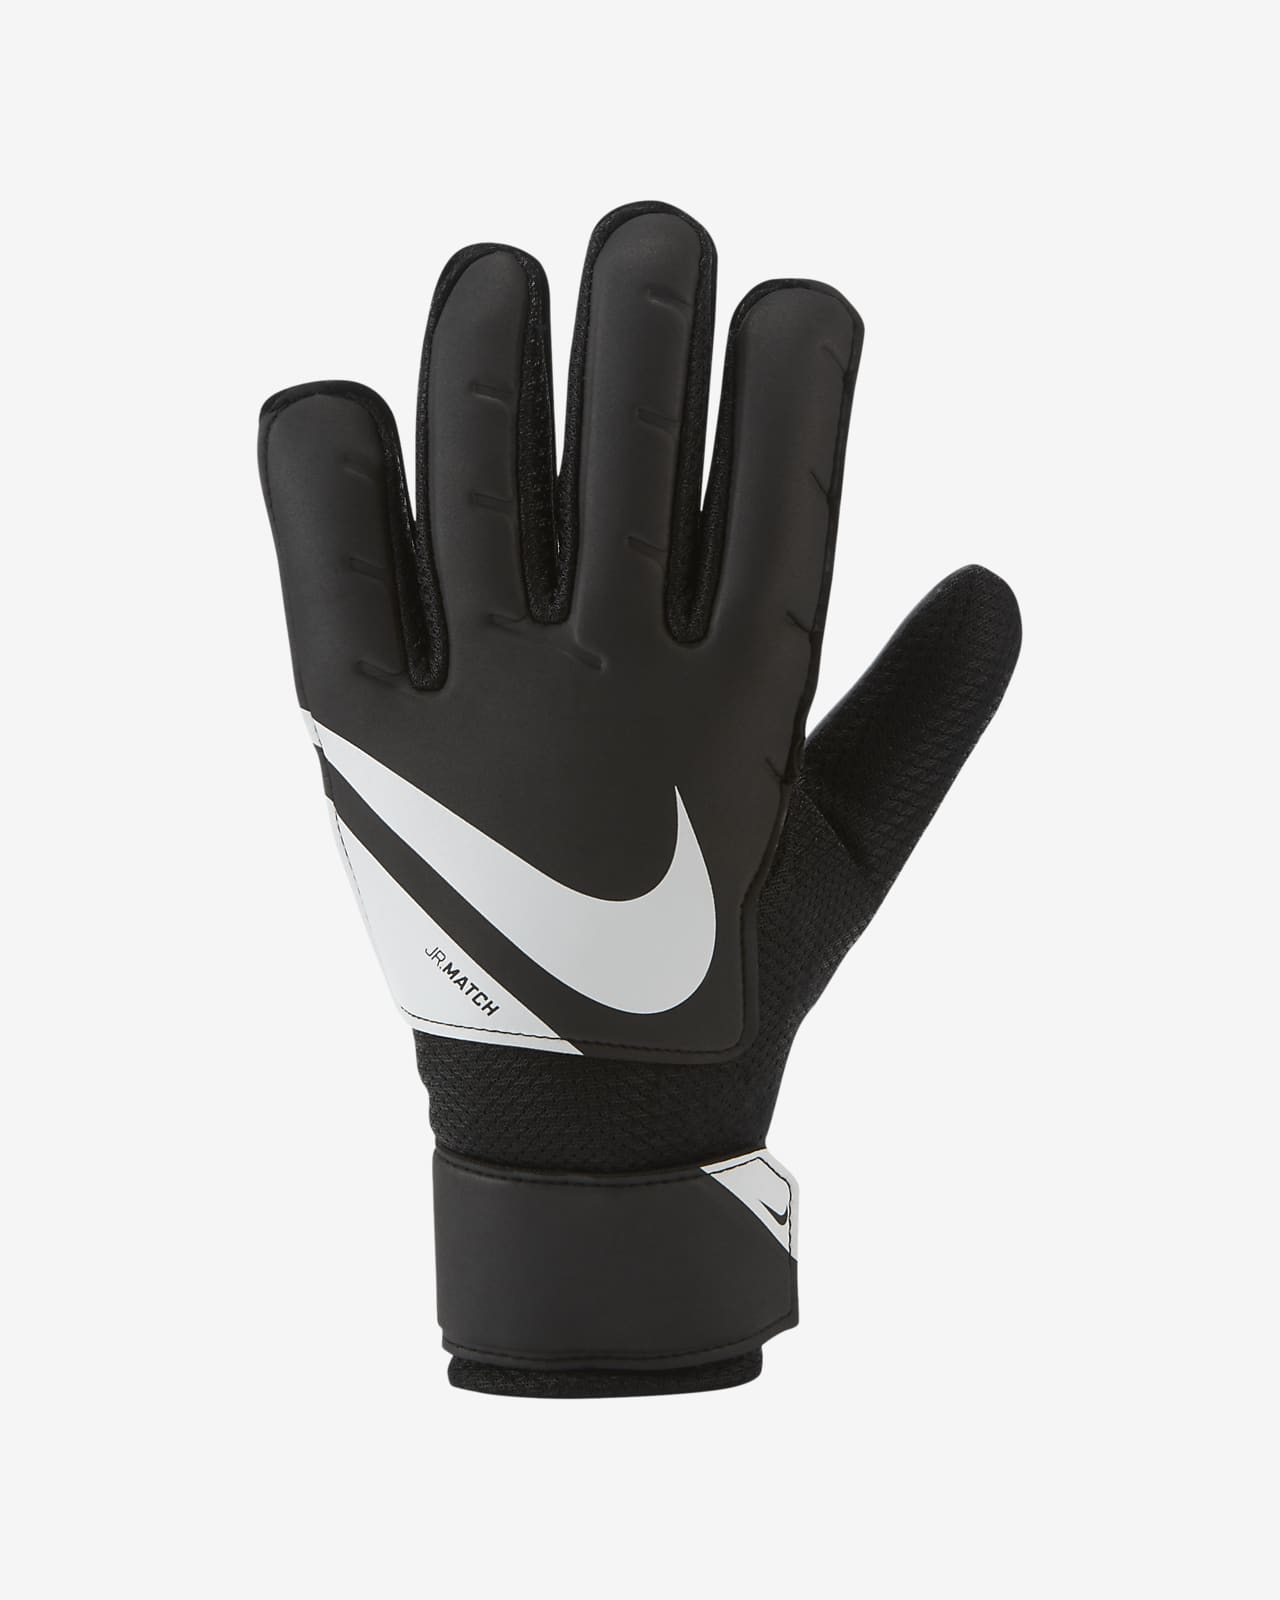 nike kids goalkeeper gloves cheap online